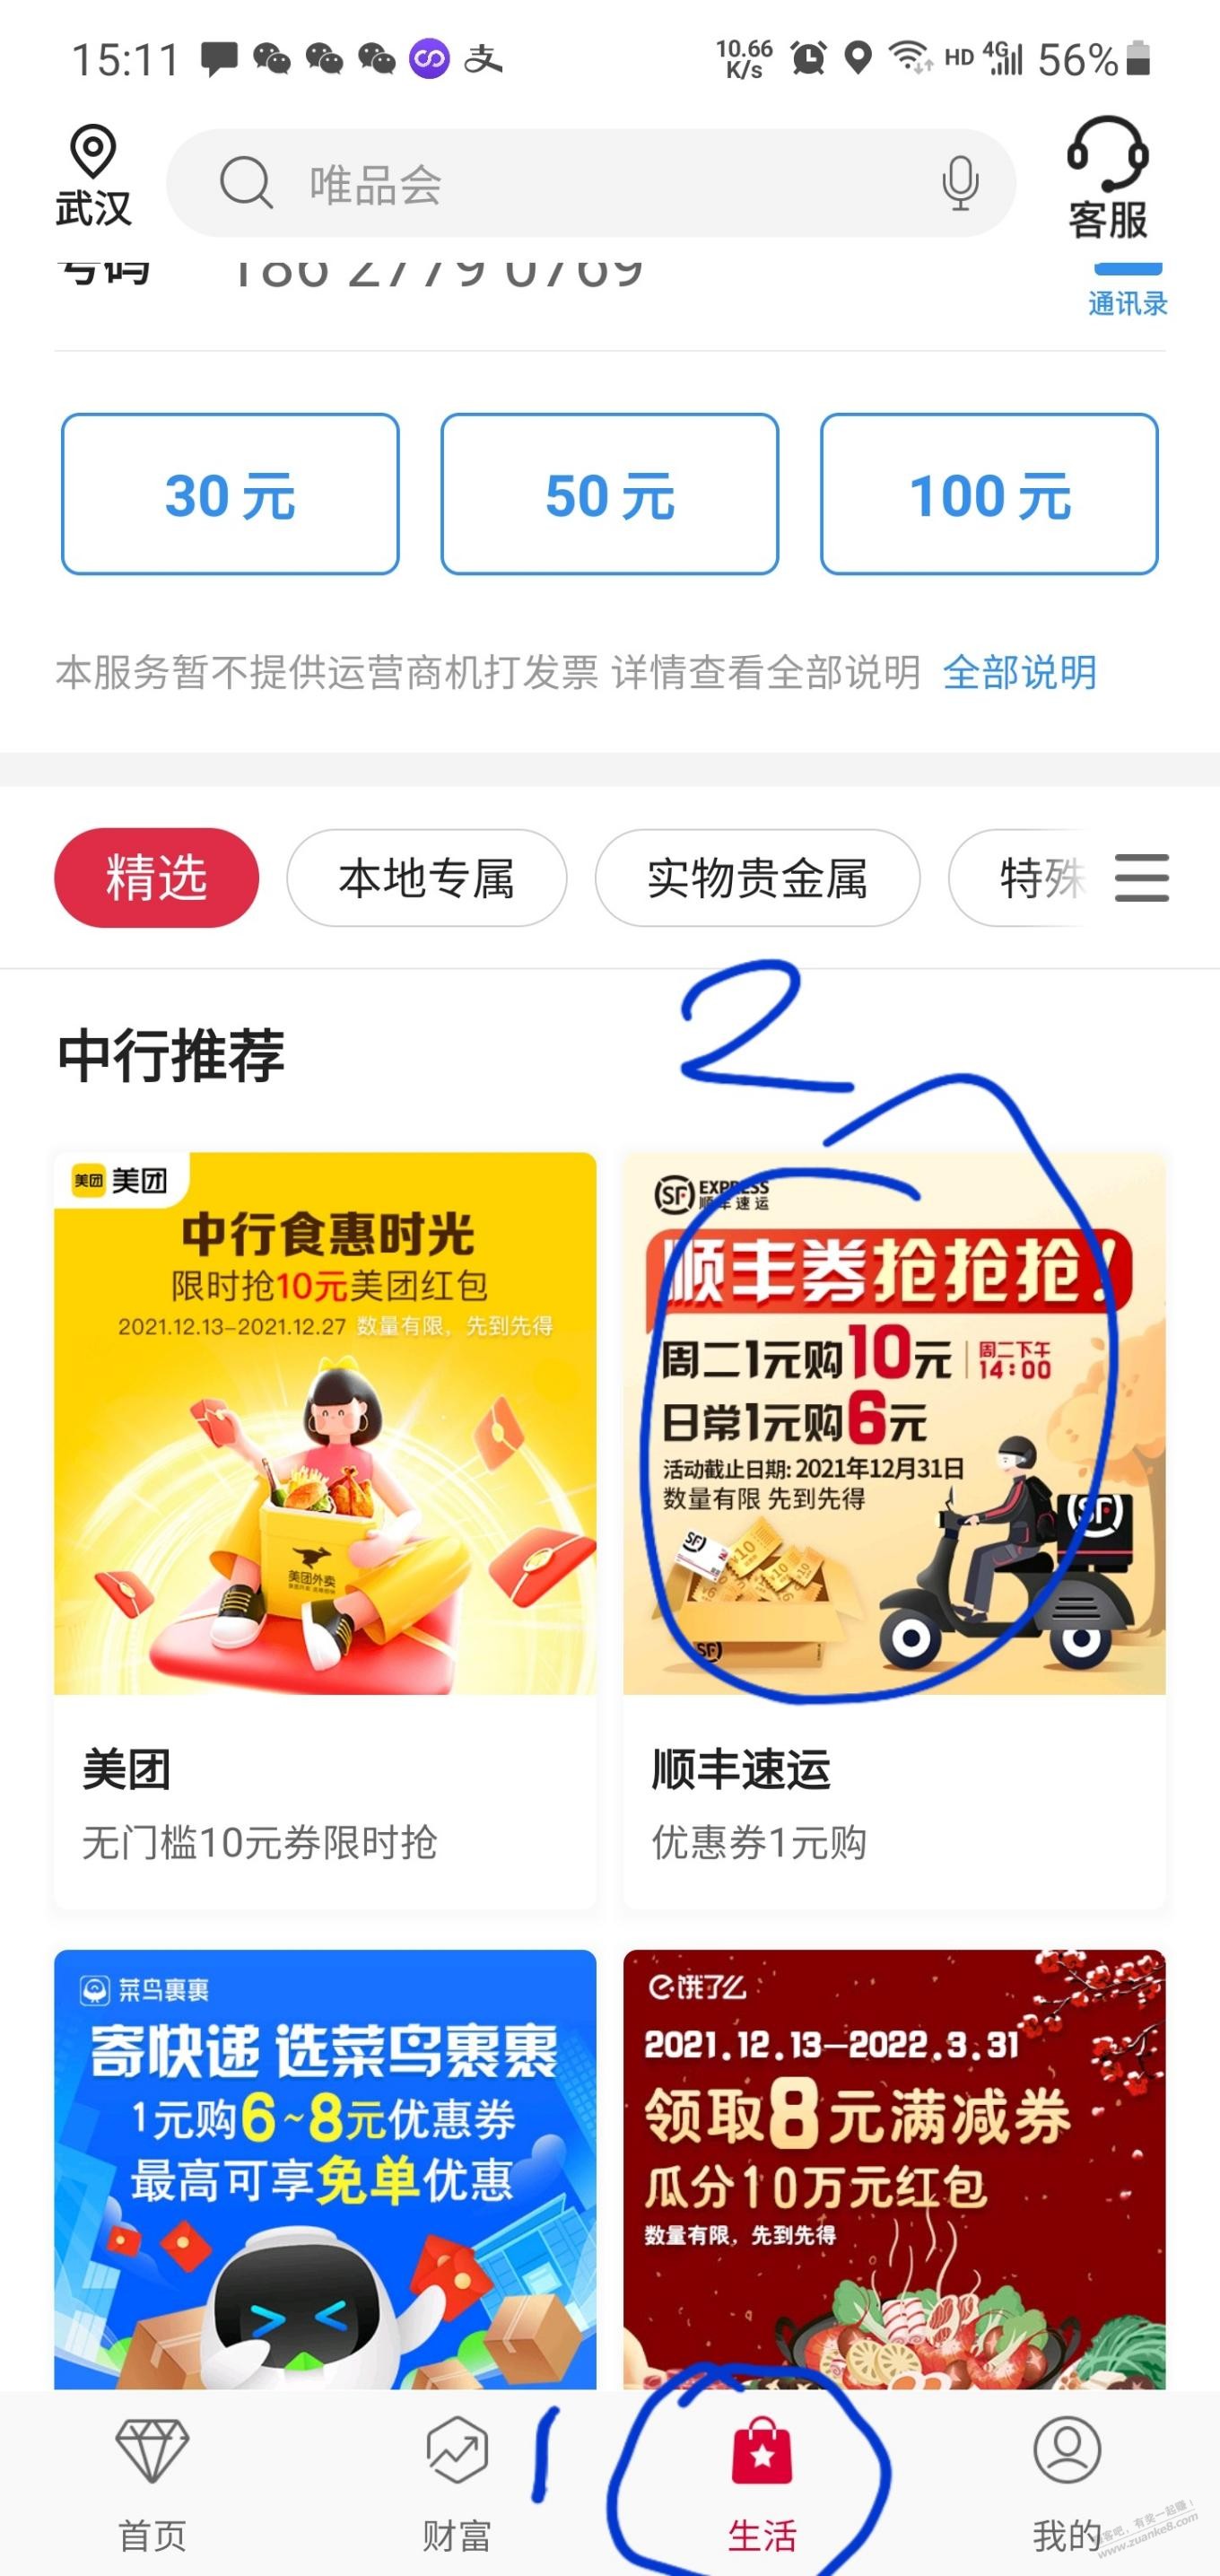 中国银行1买6顺丰优惠券-知道无视-惠小助(52huixz.com)